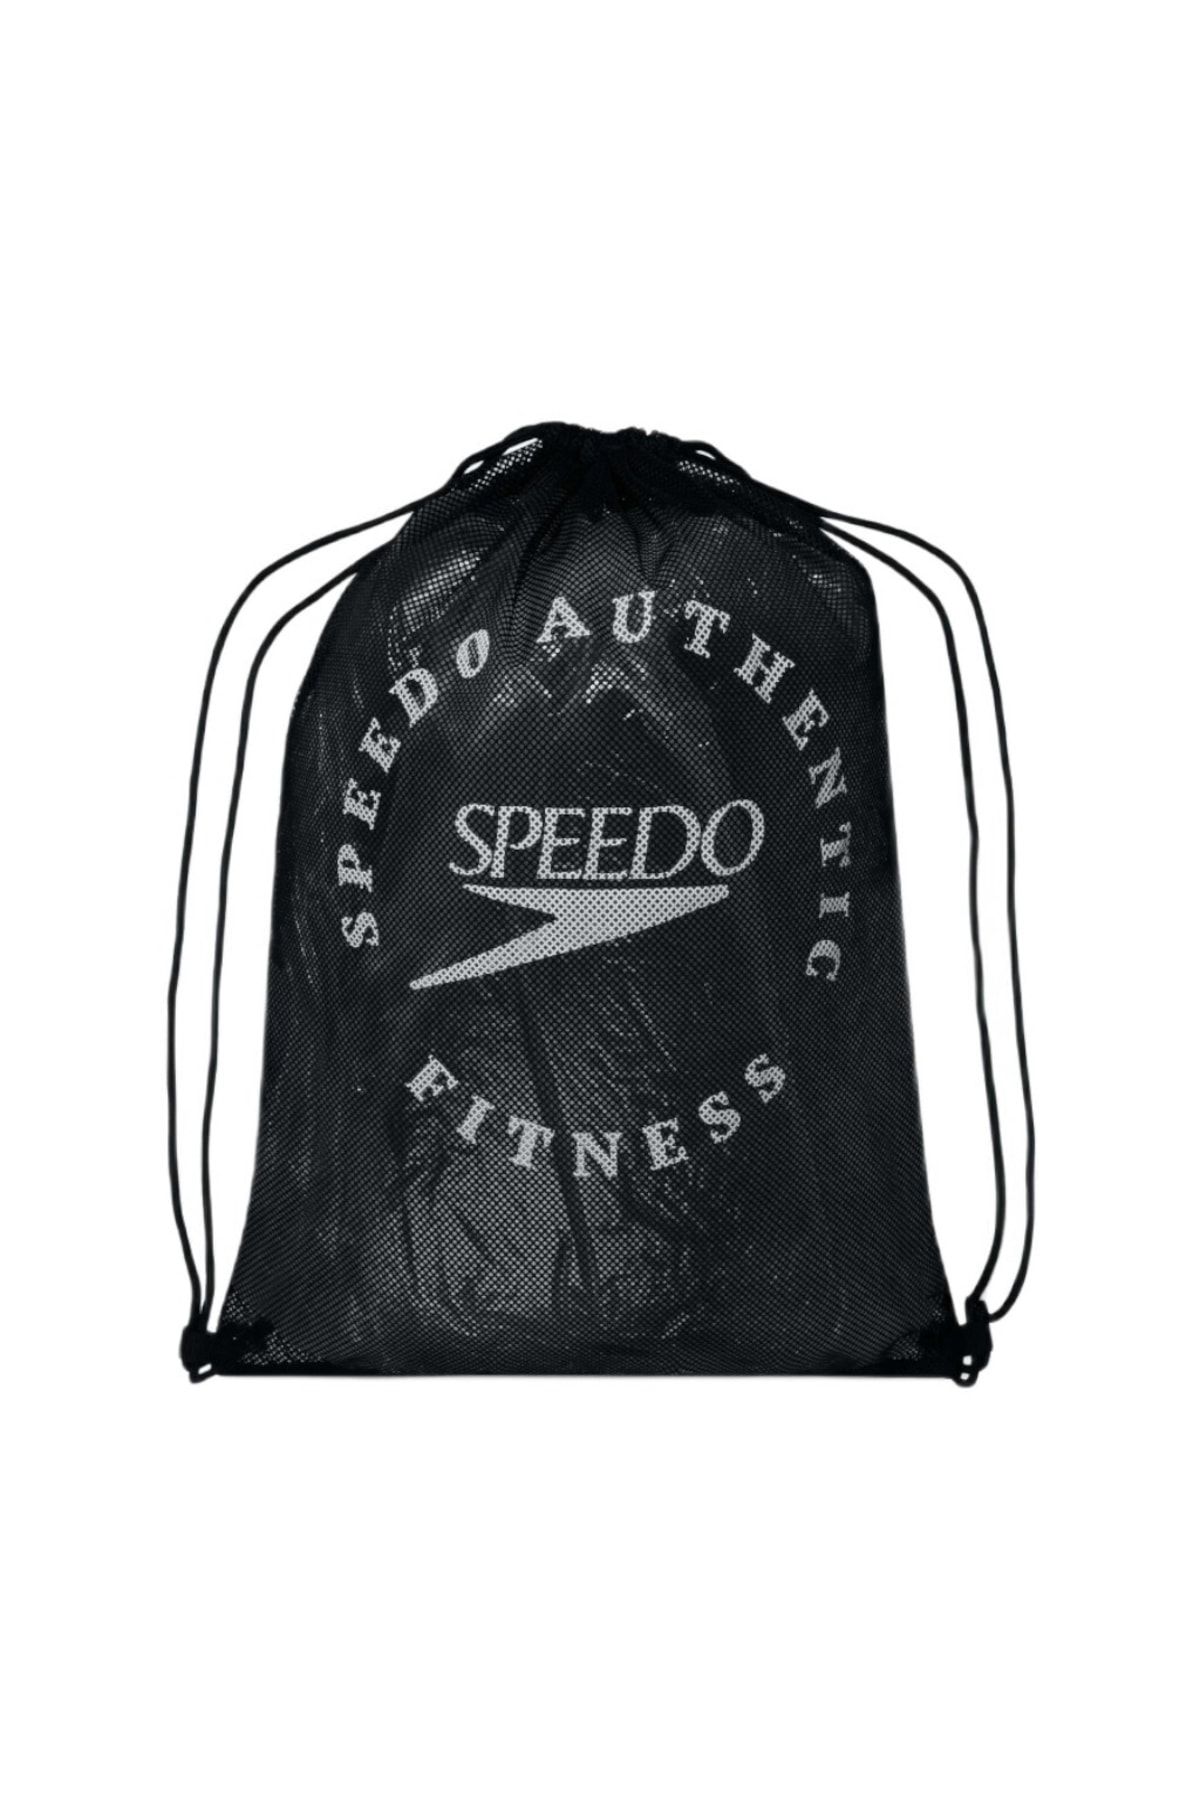 SPEEDO Printed Mesh Bag (siyah/beyaz)